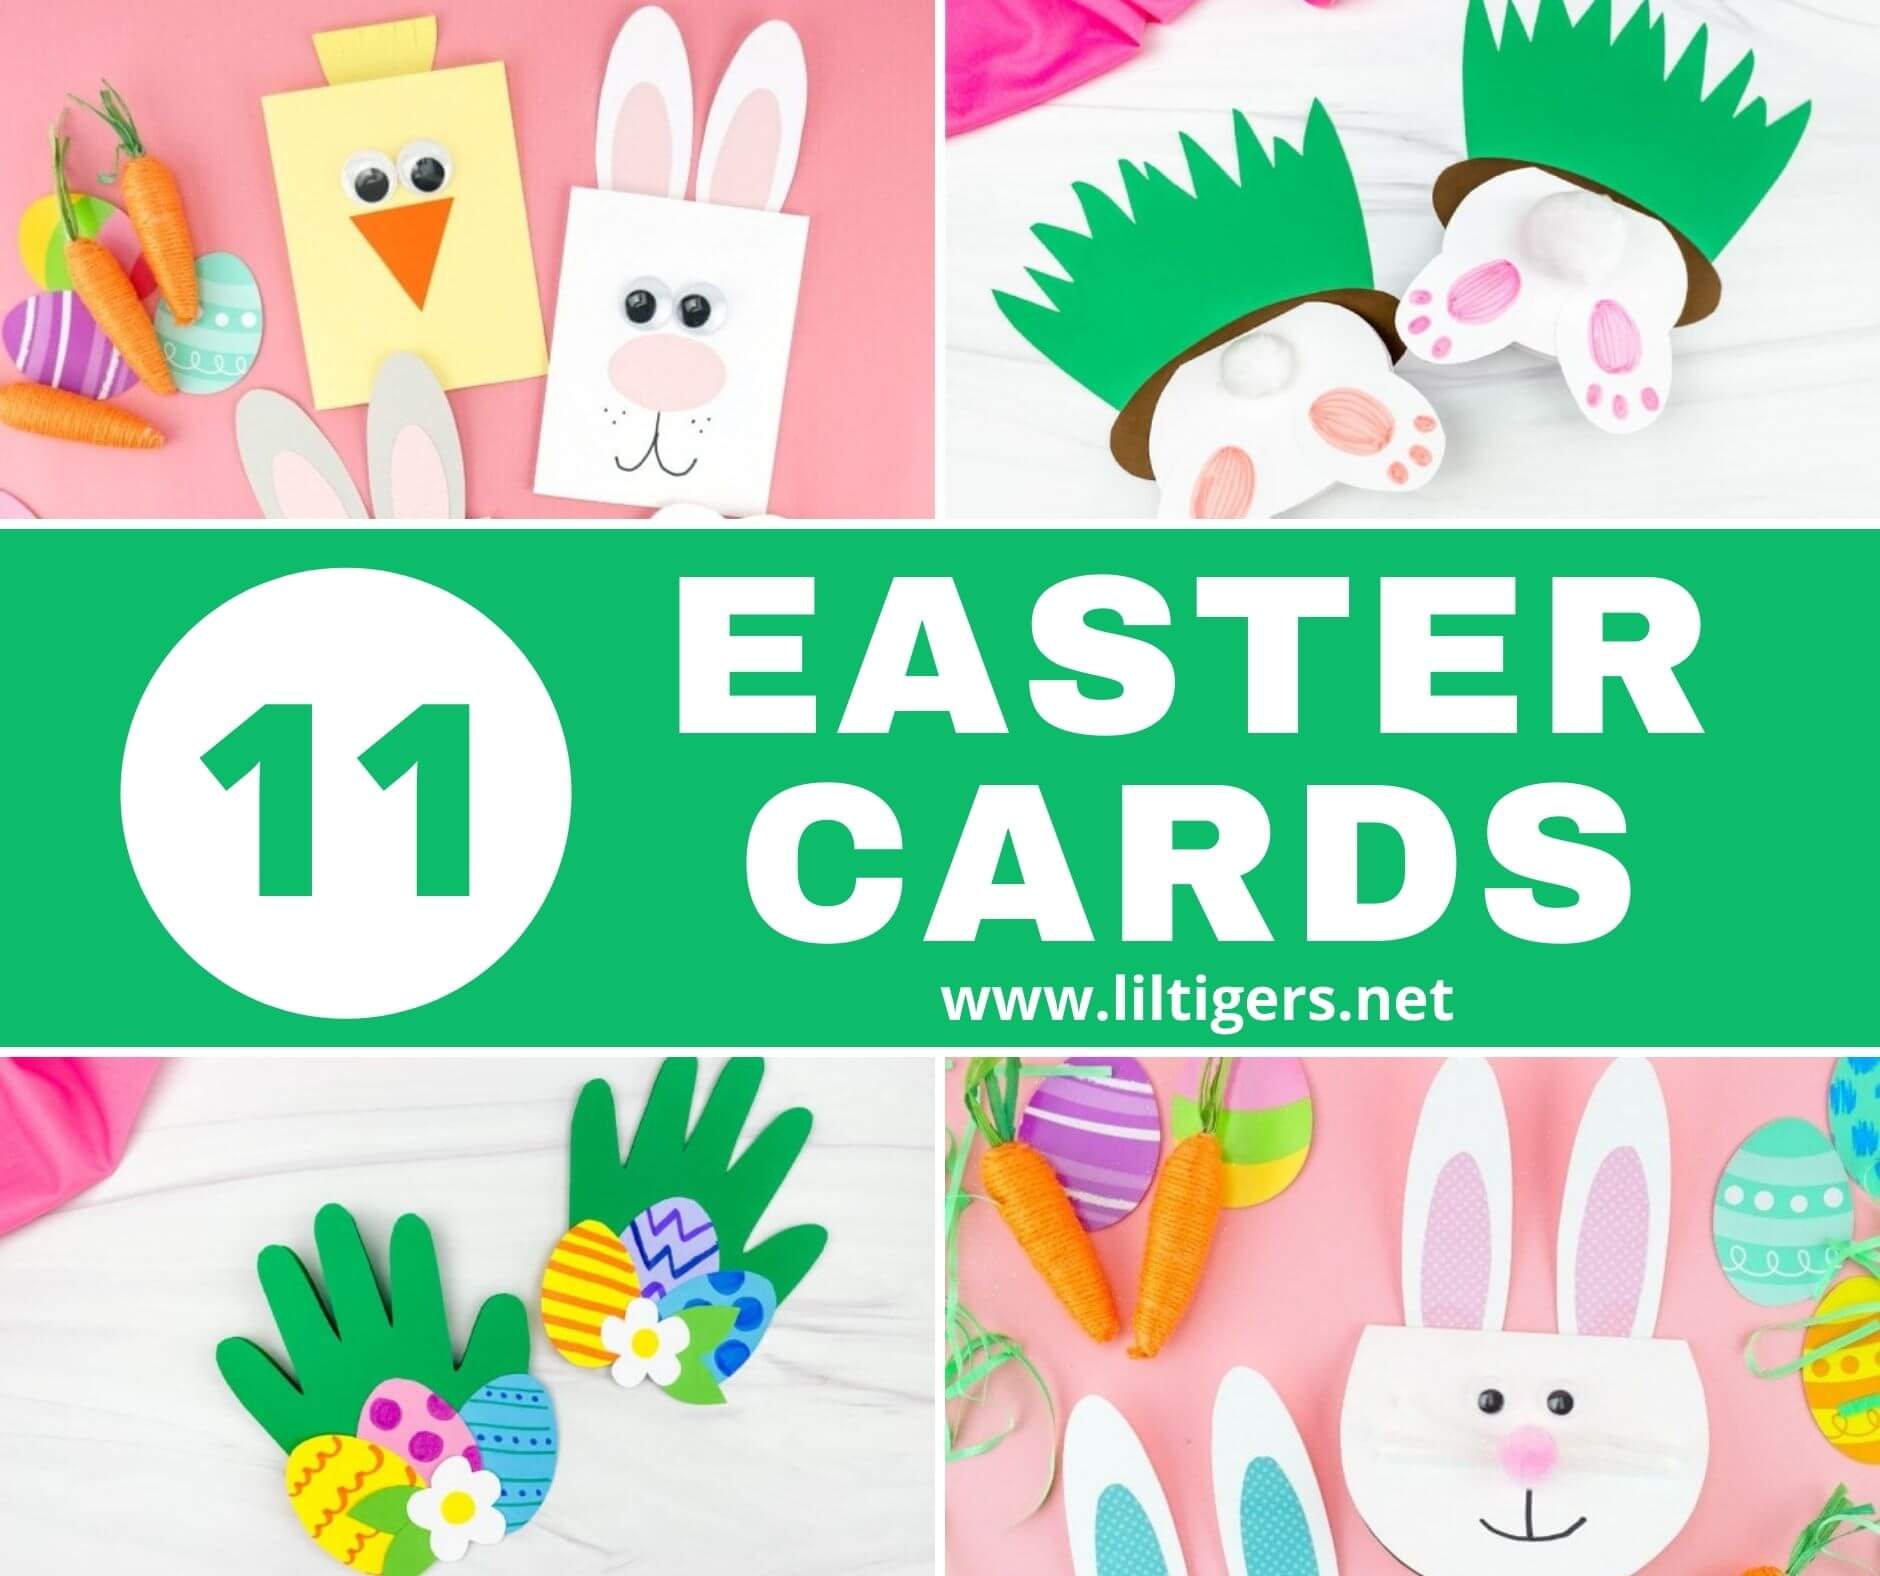 DIY Easter Card Crafts